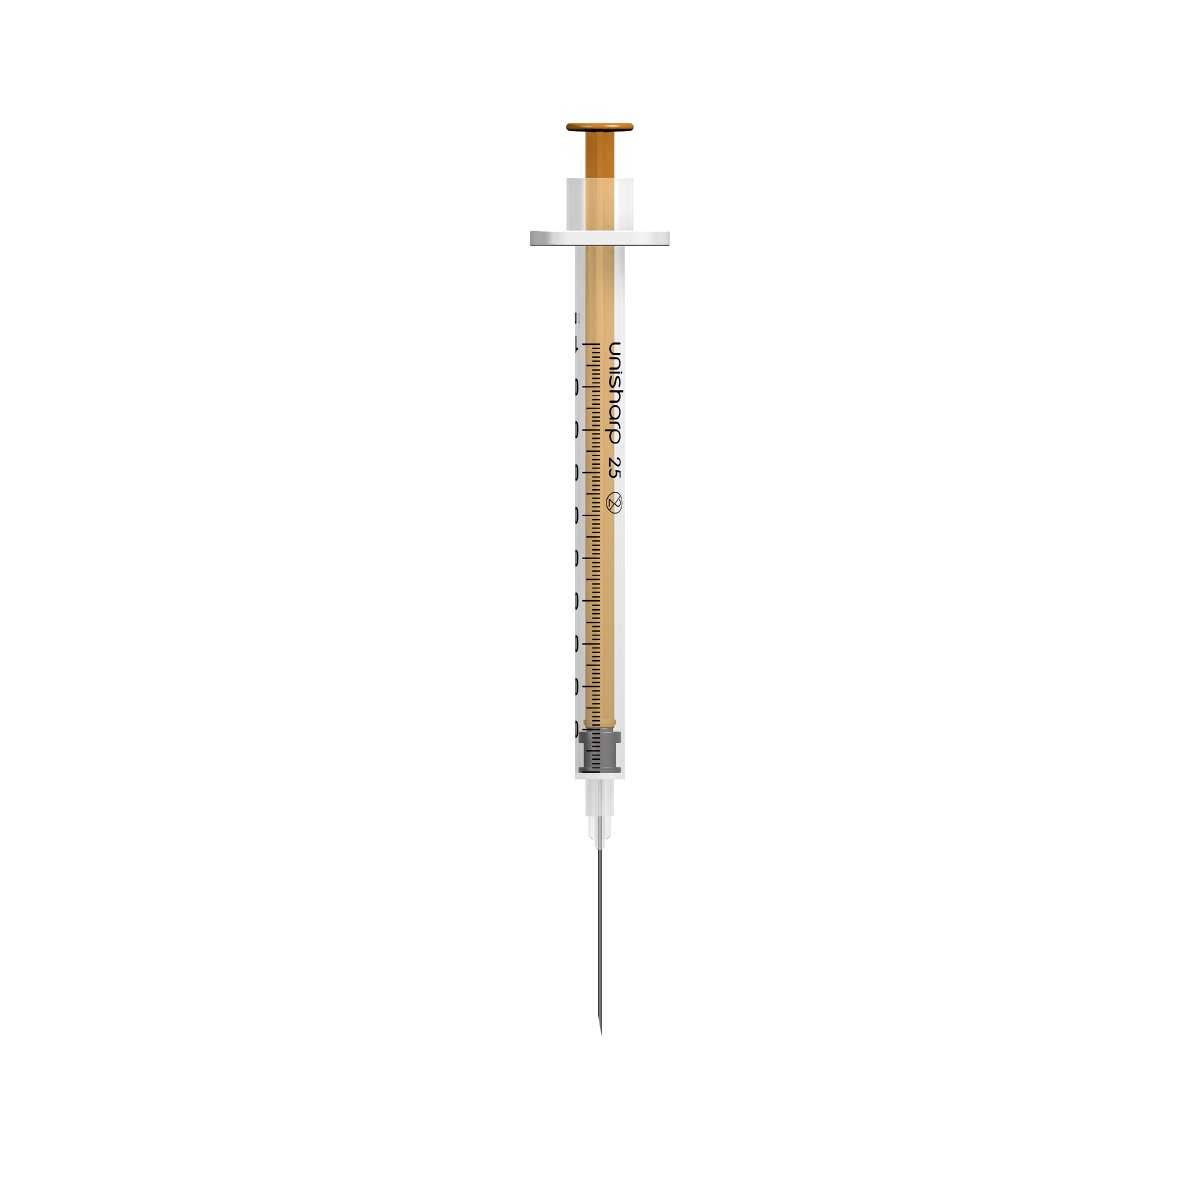 1ml 25g 25mm 1 inch Unisharp Syringe and Needle u100 - UKMEDI